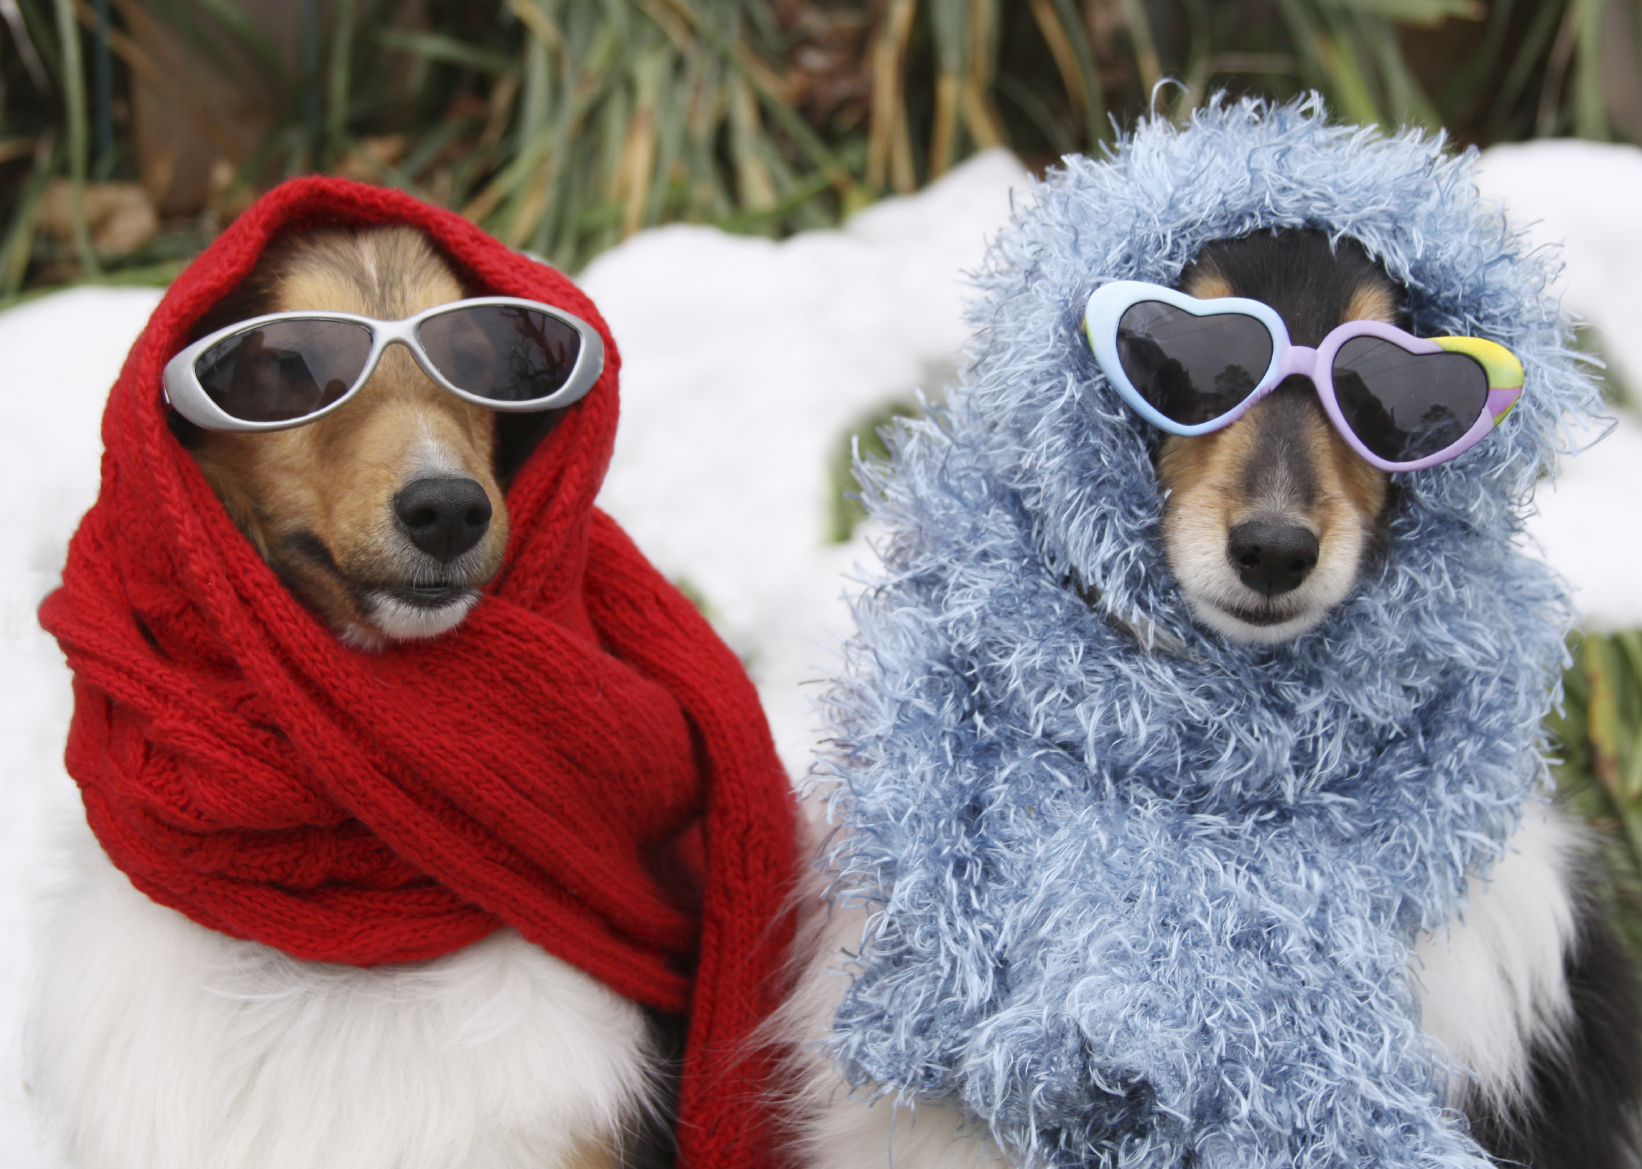 Eigendom Scheiden Voorwaarden Winter Pet Safety - American Alarm